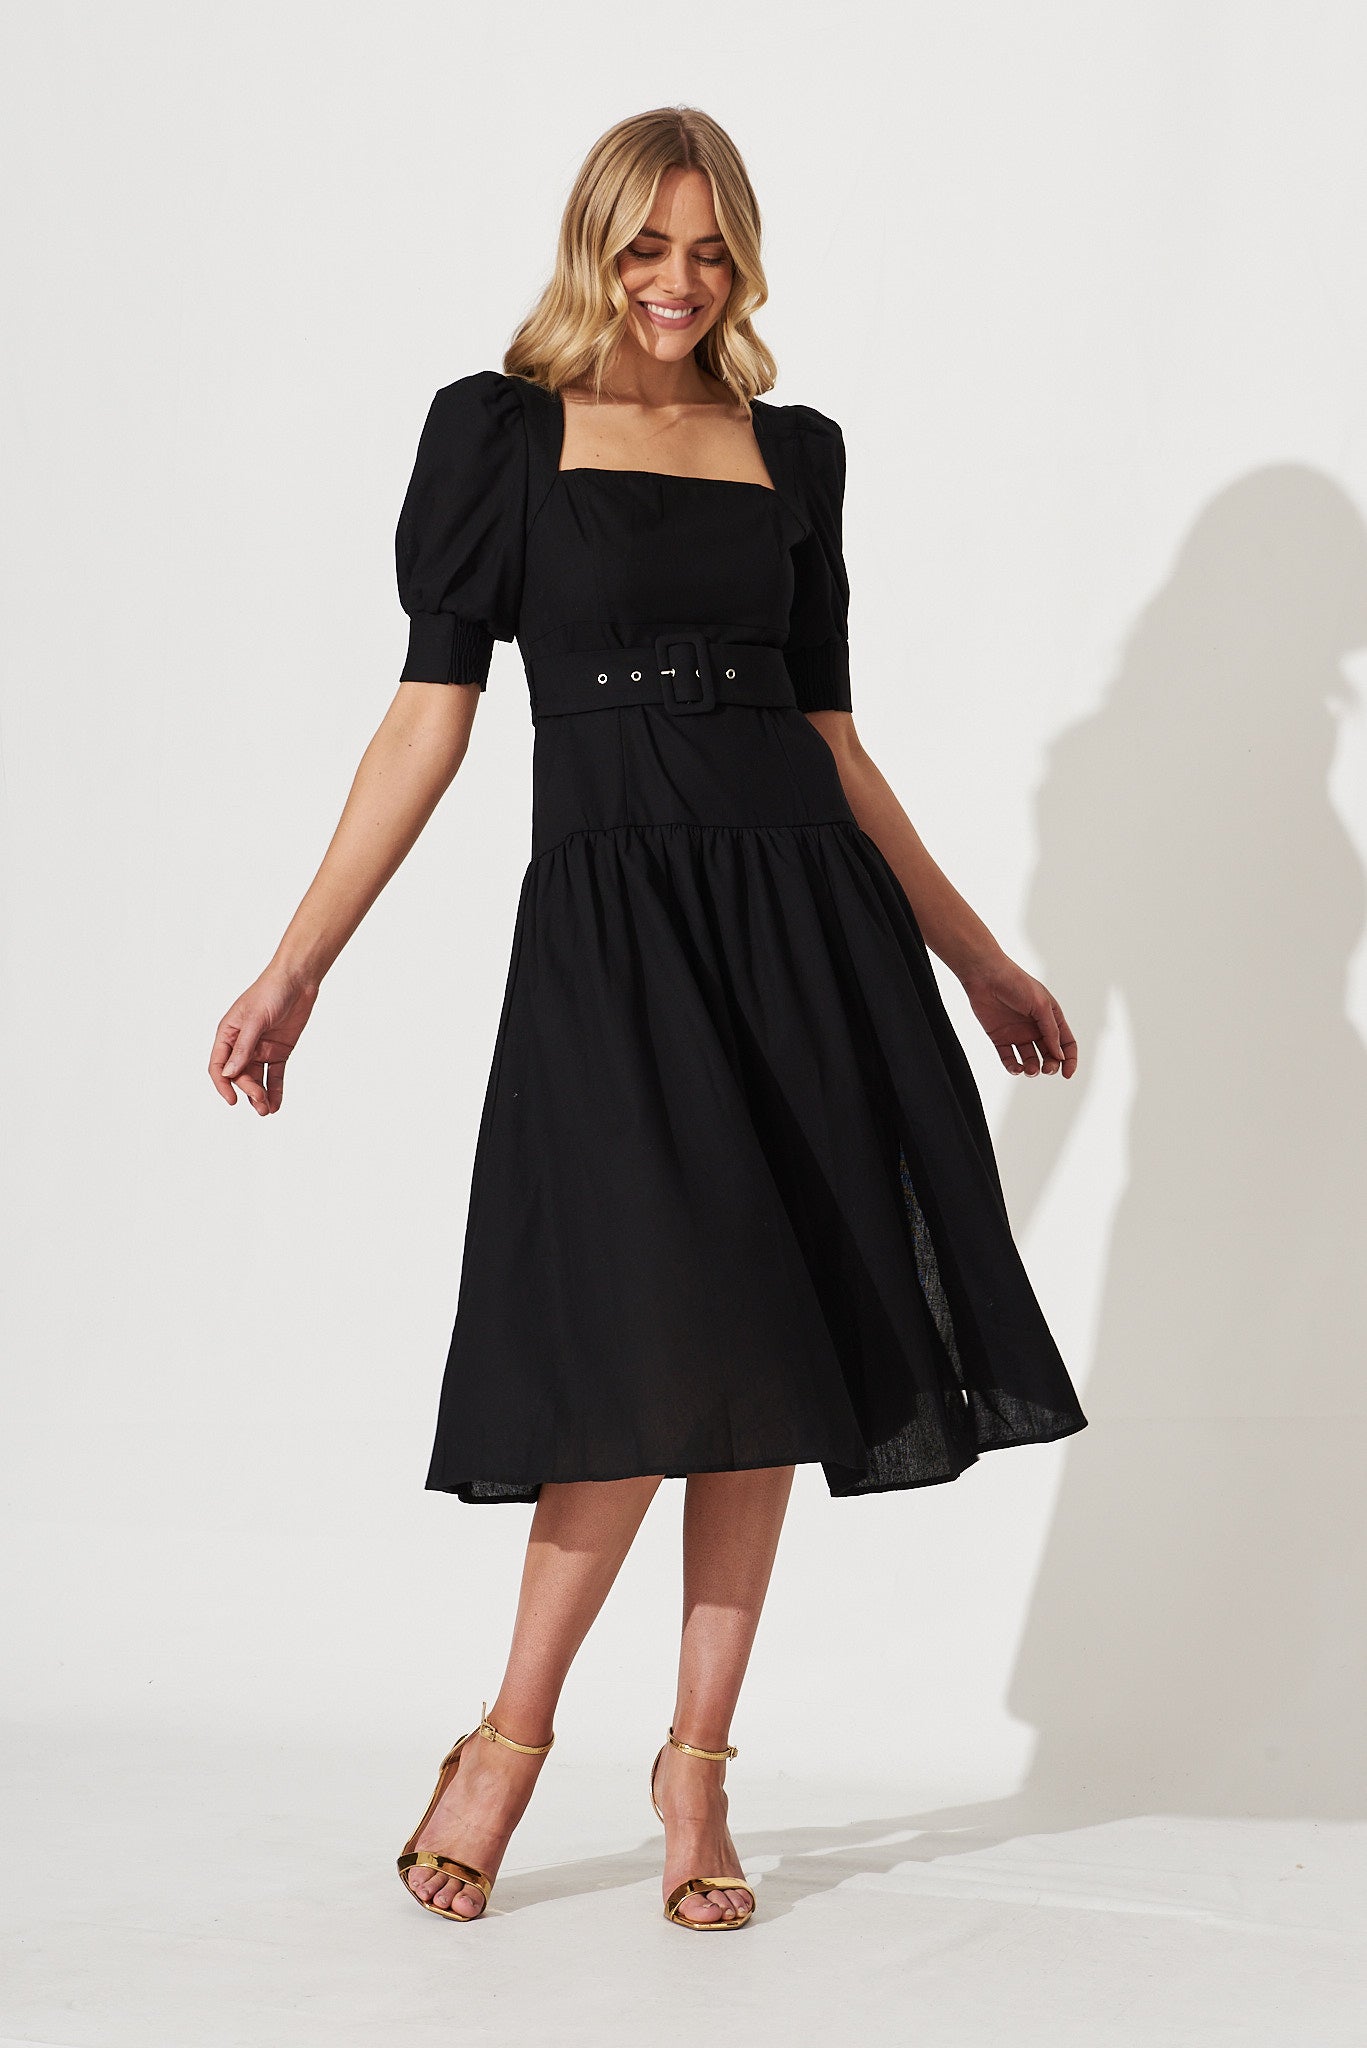 Fantasia Midi Dress In Black Cotton Linen Blend - full length